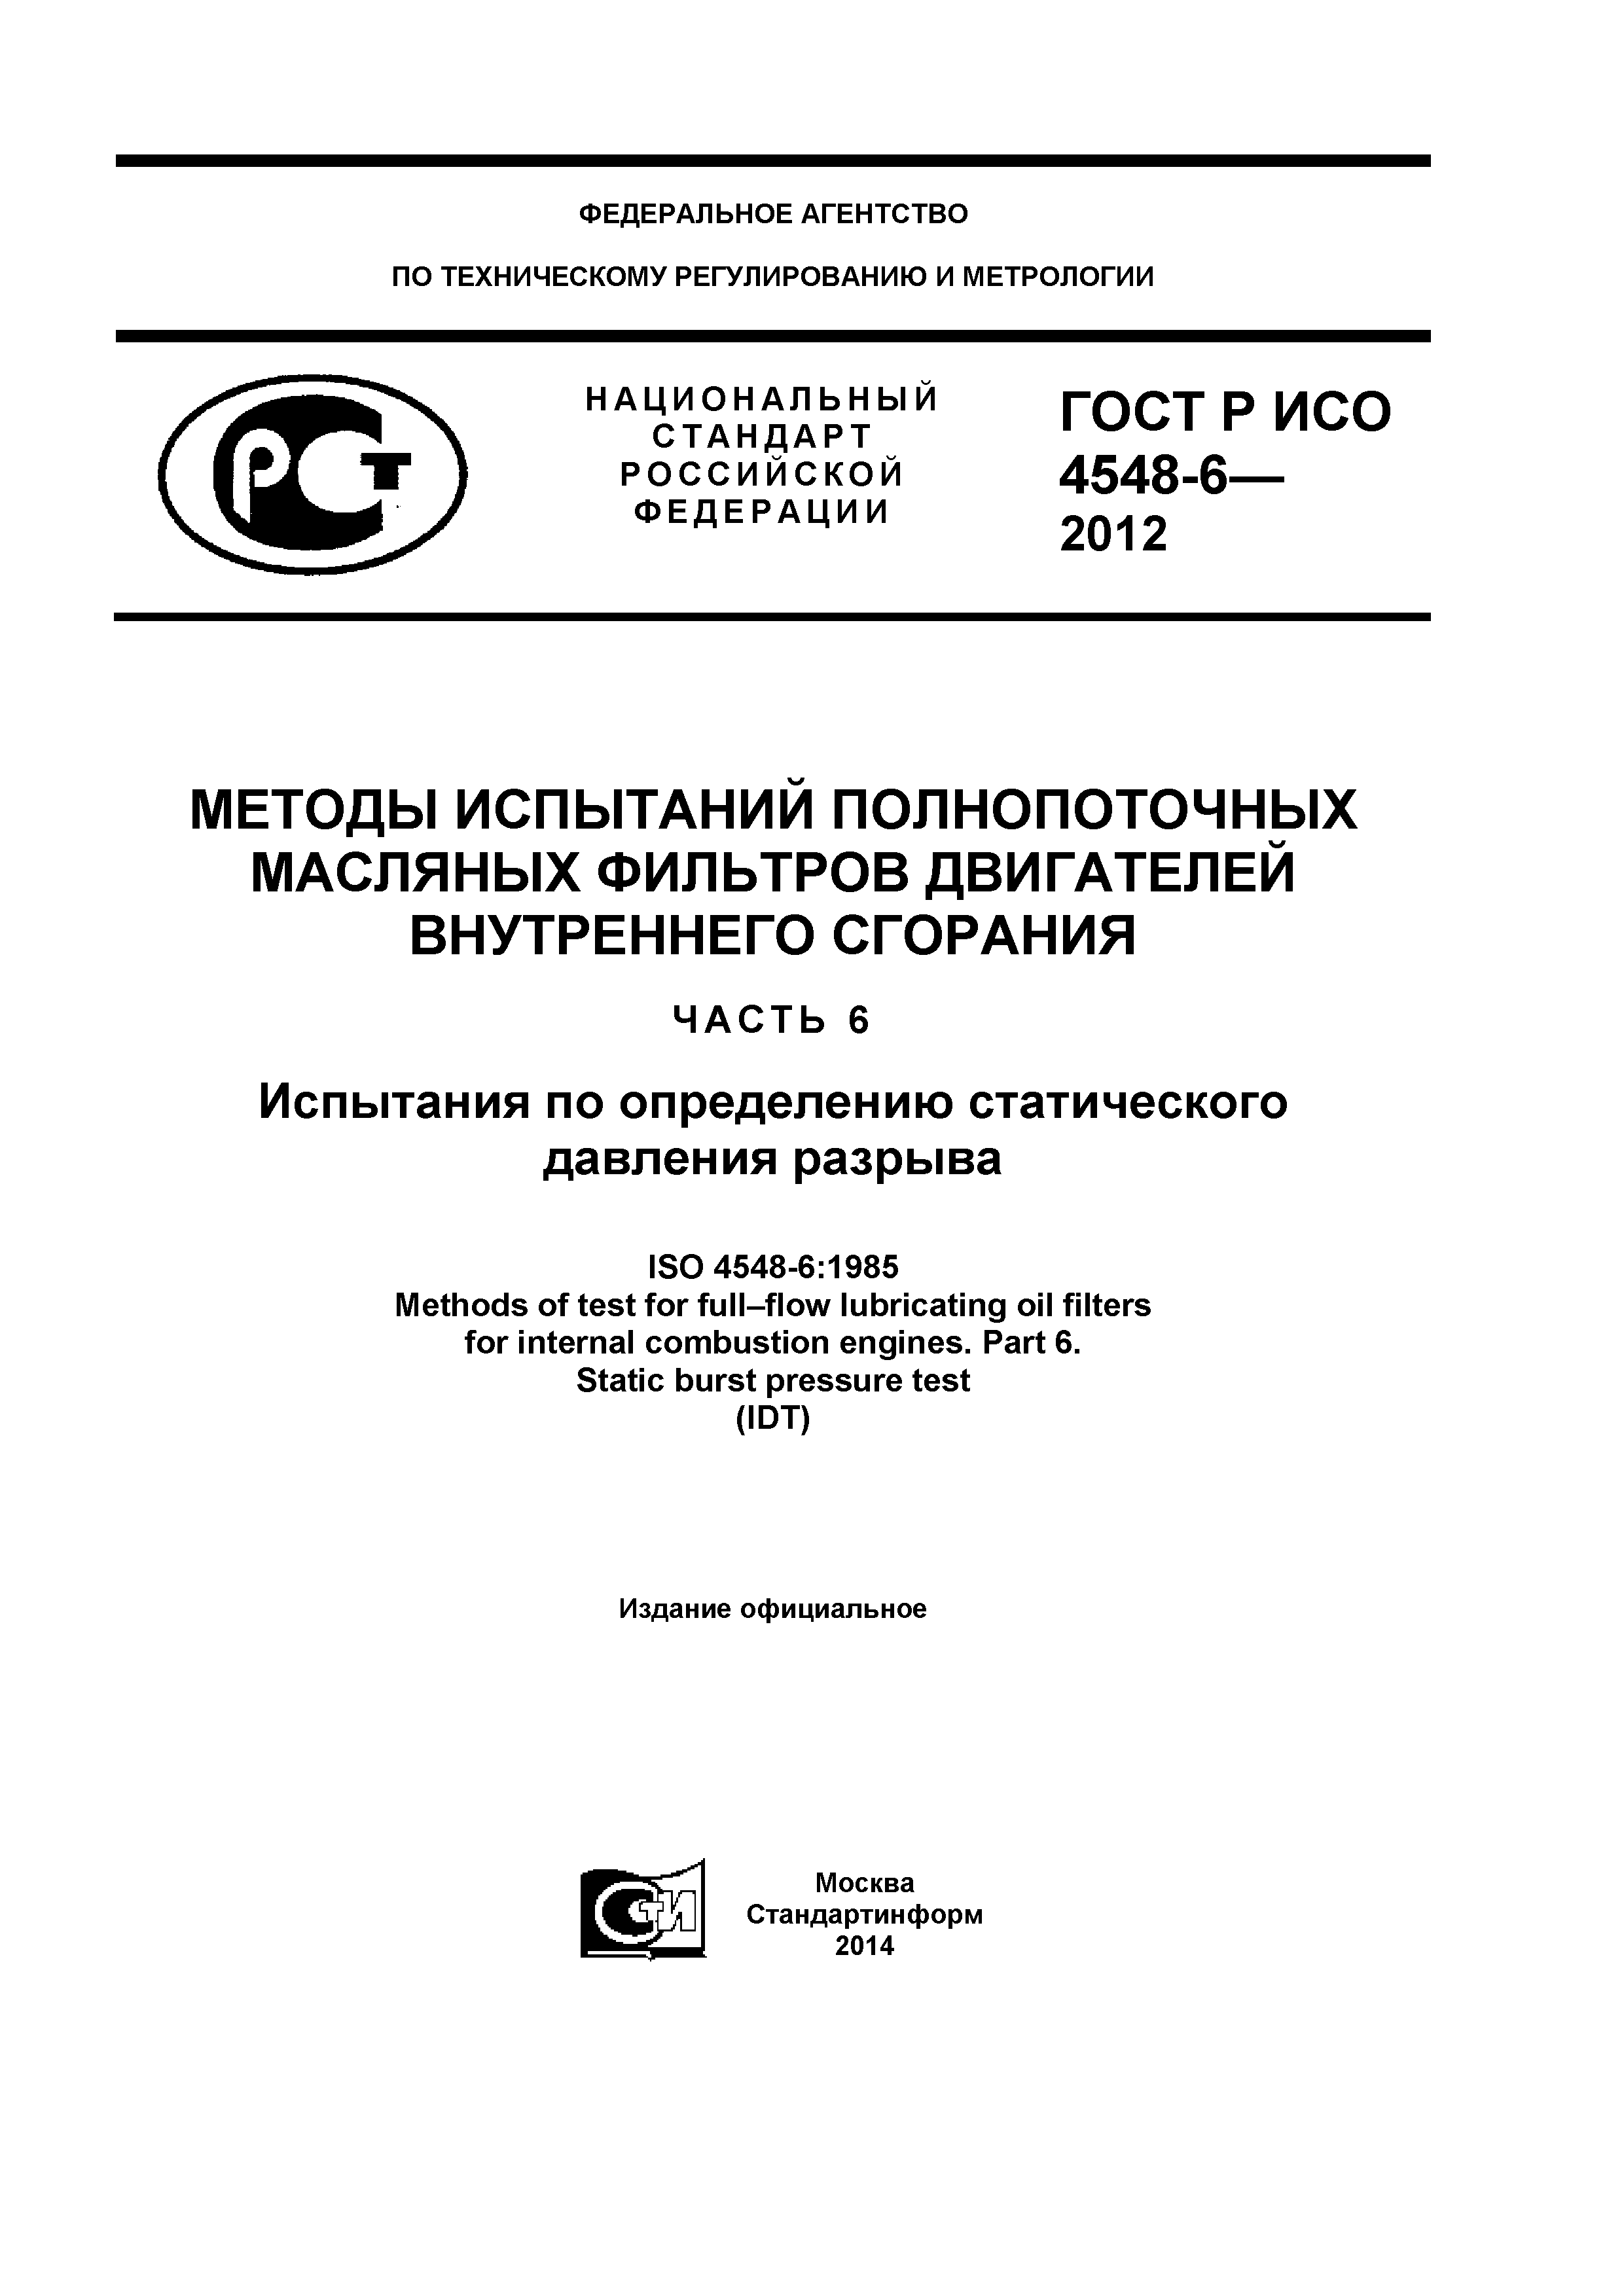 ГОСТ Р ИСО 4548-6-2012